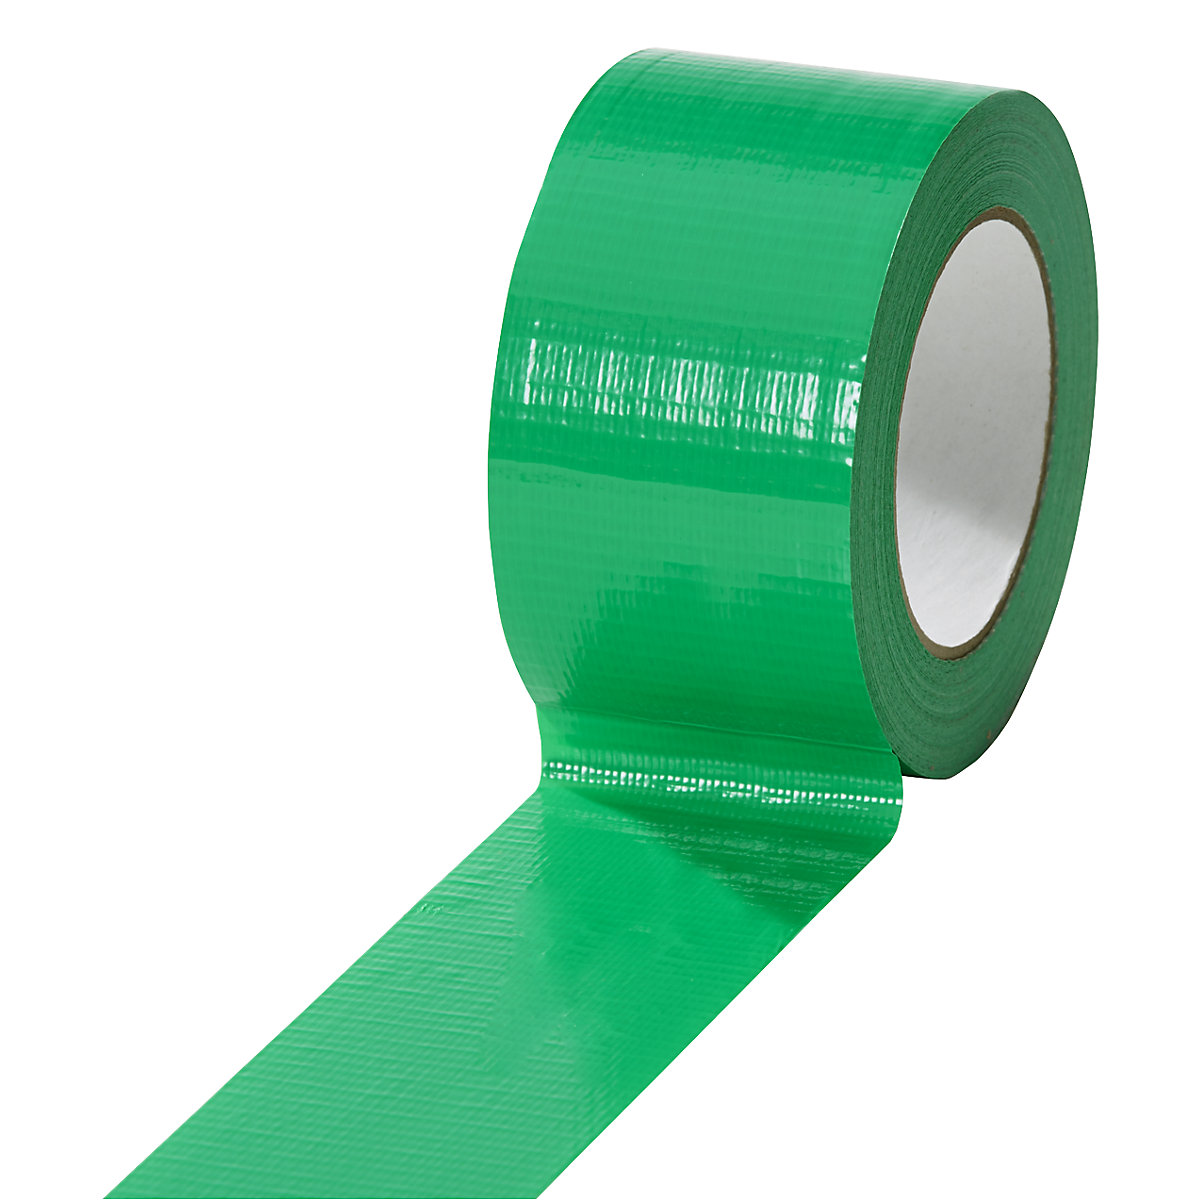 Gewebeband, in verschiedenen Farben, VE 18 Rollen, grün, Bandbreite 50 mm-9